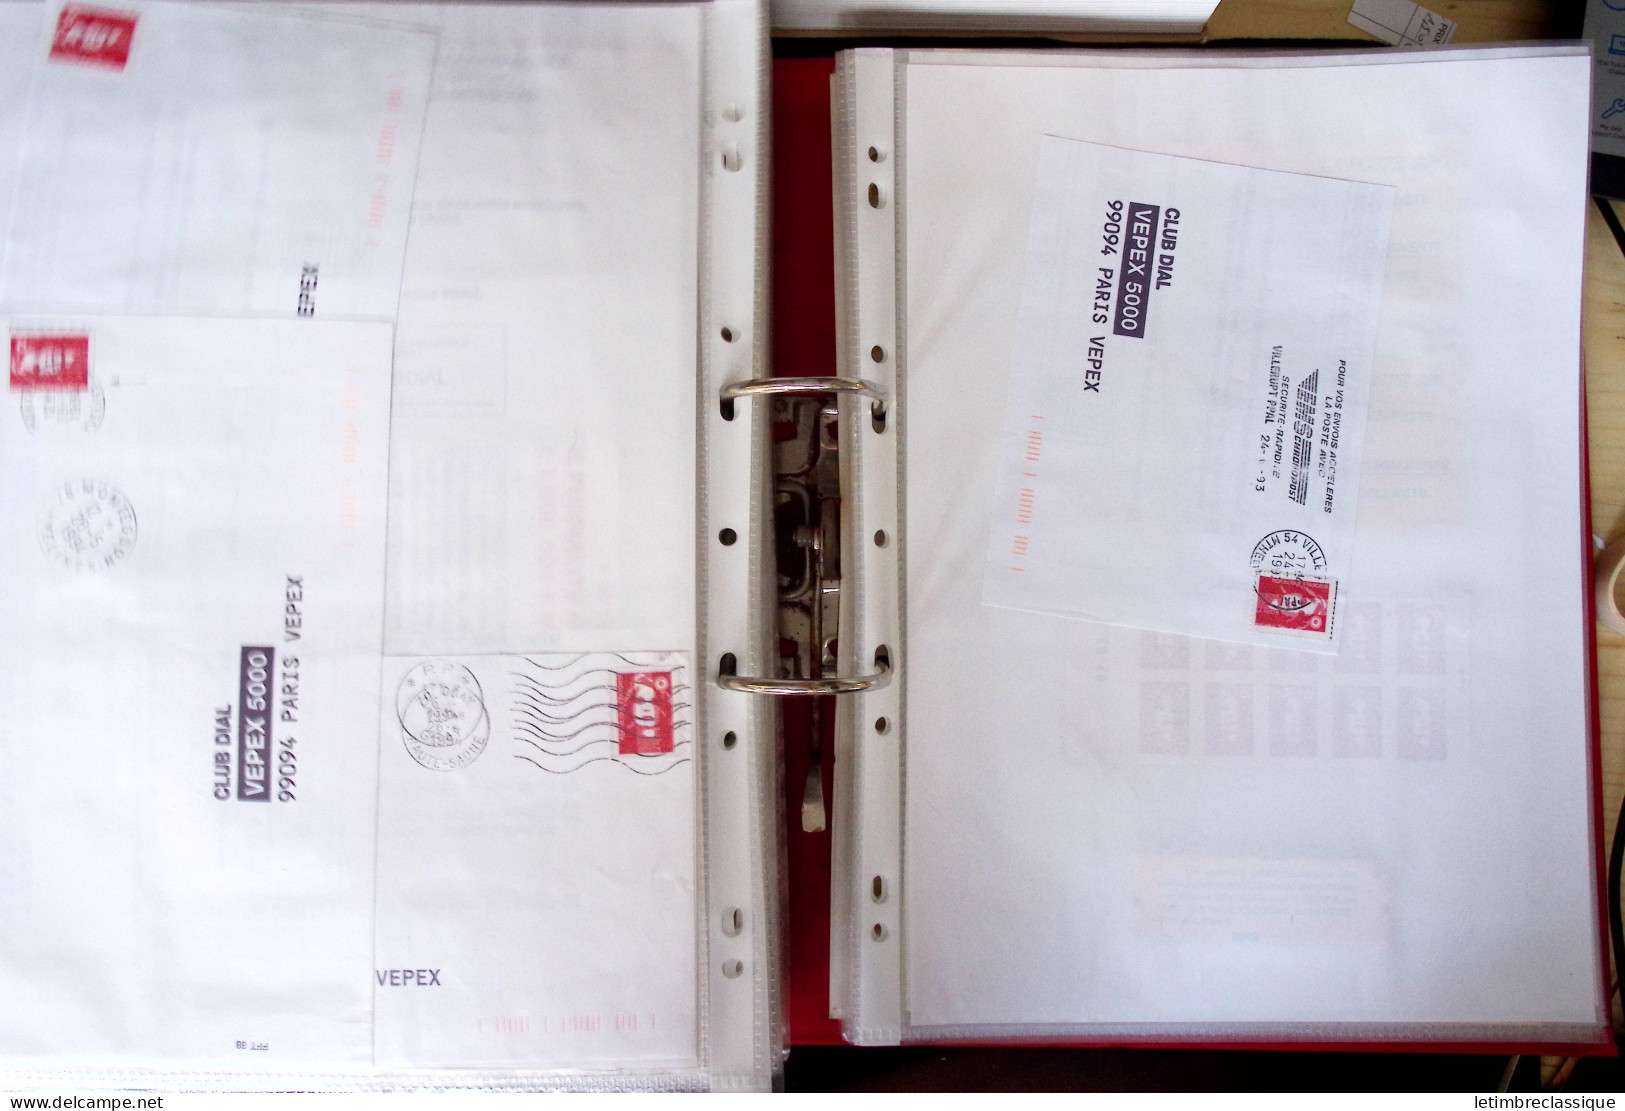 **,lettre Collection de TVP Briat rouges plupart autocollants dans un classeur de bureau rouge : plus de 280 TVP neufs (